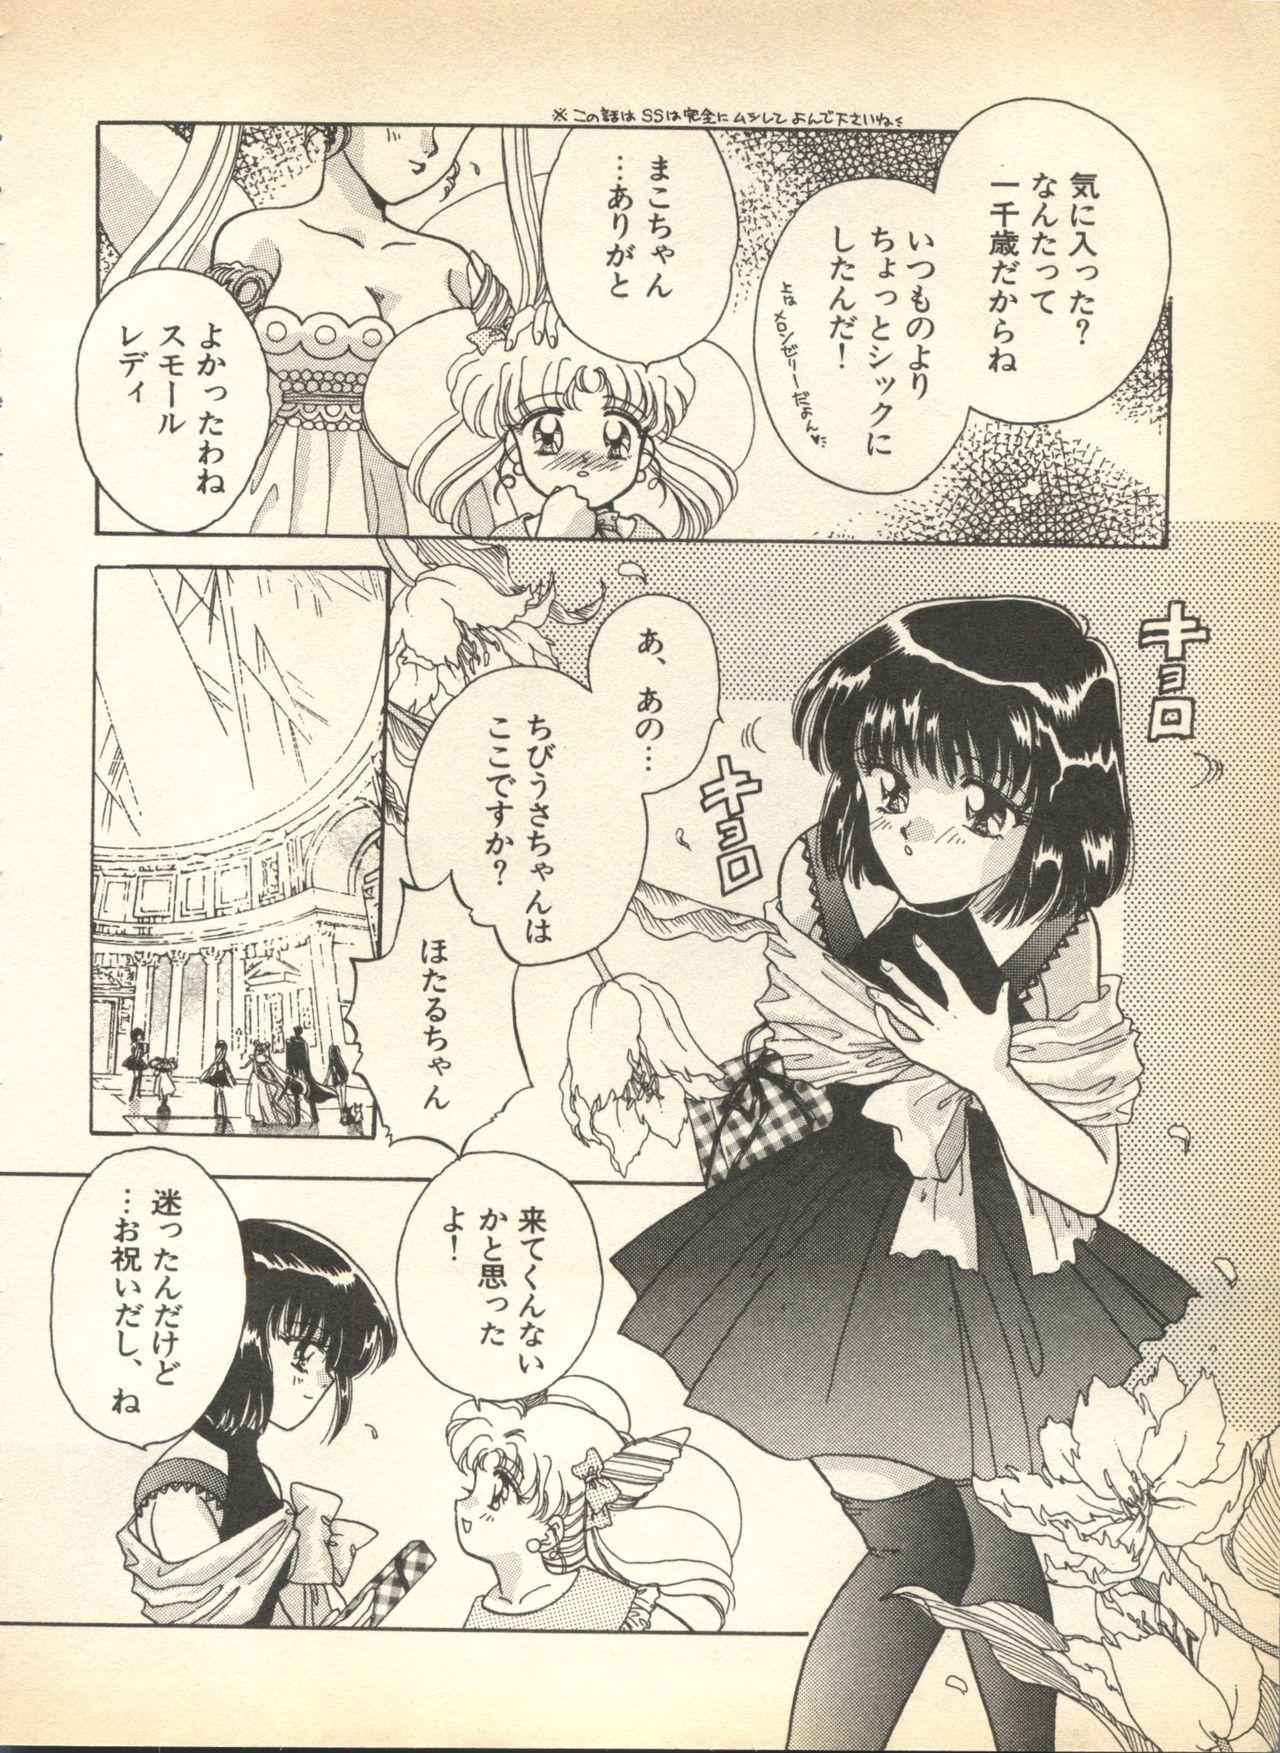 Slutty Lunatic Party 8 - Sailor moon Suruba - Page 8